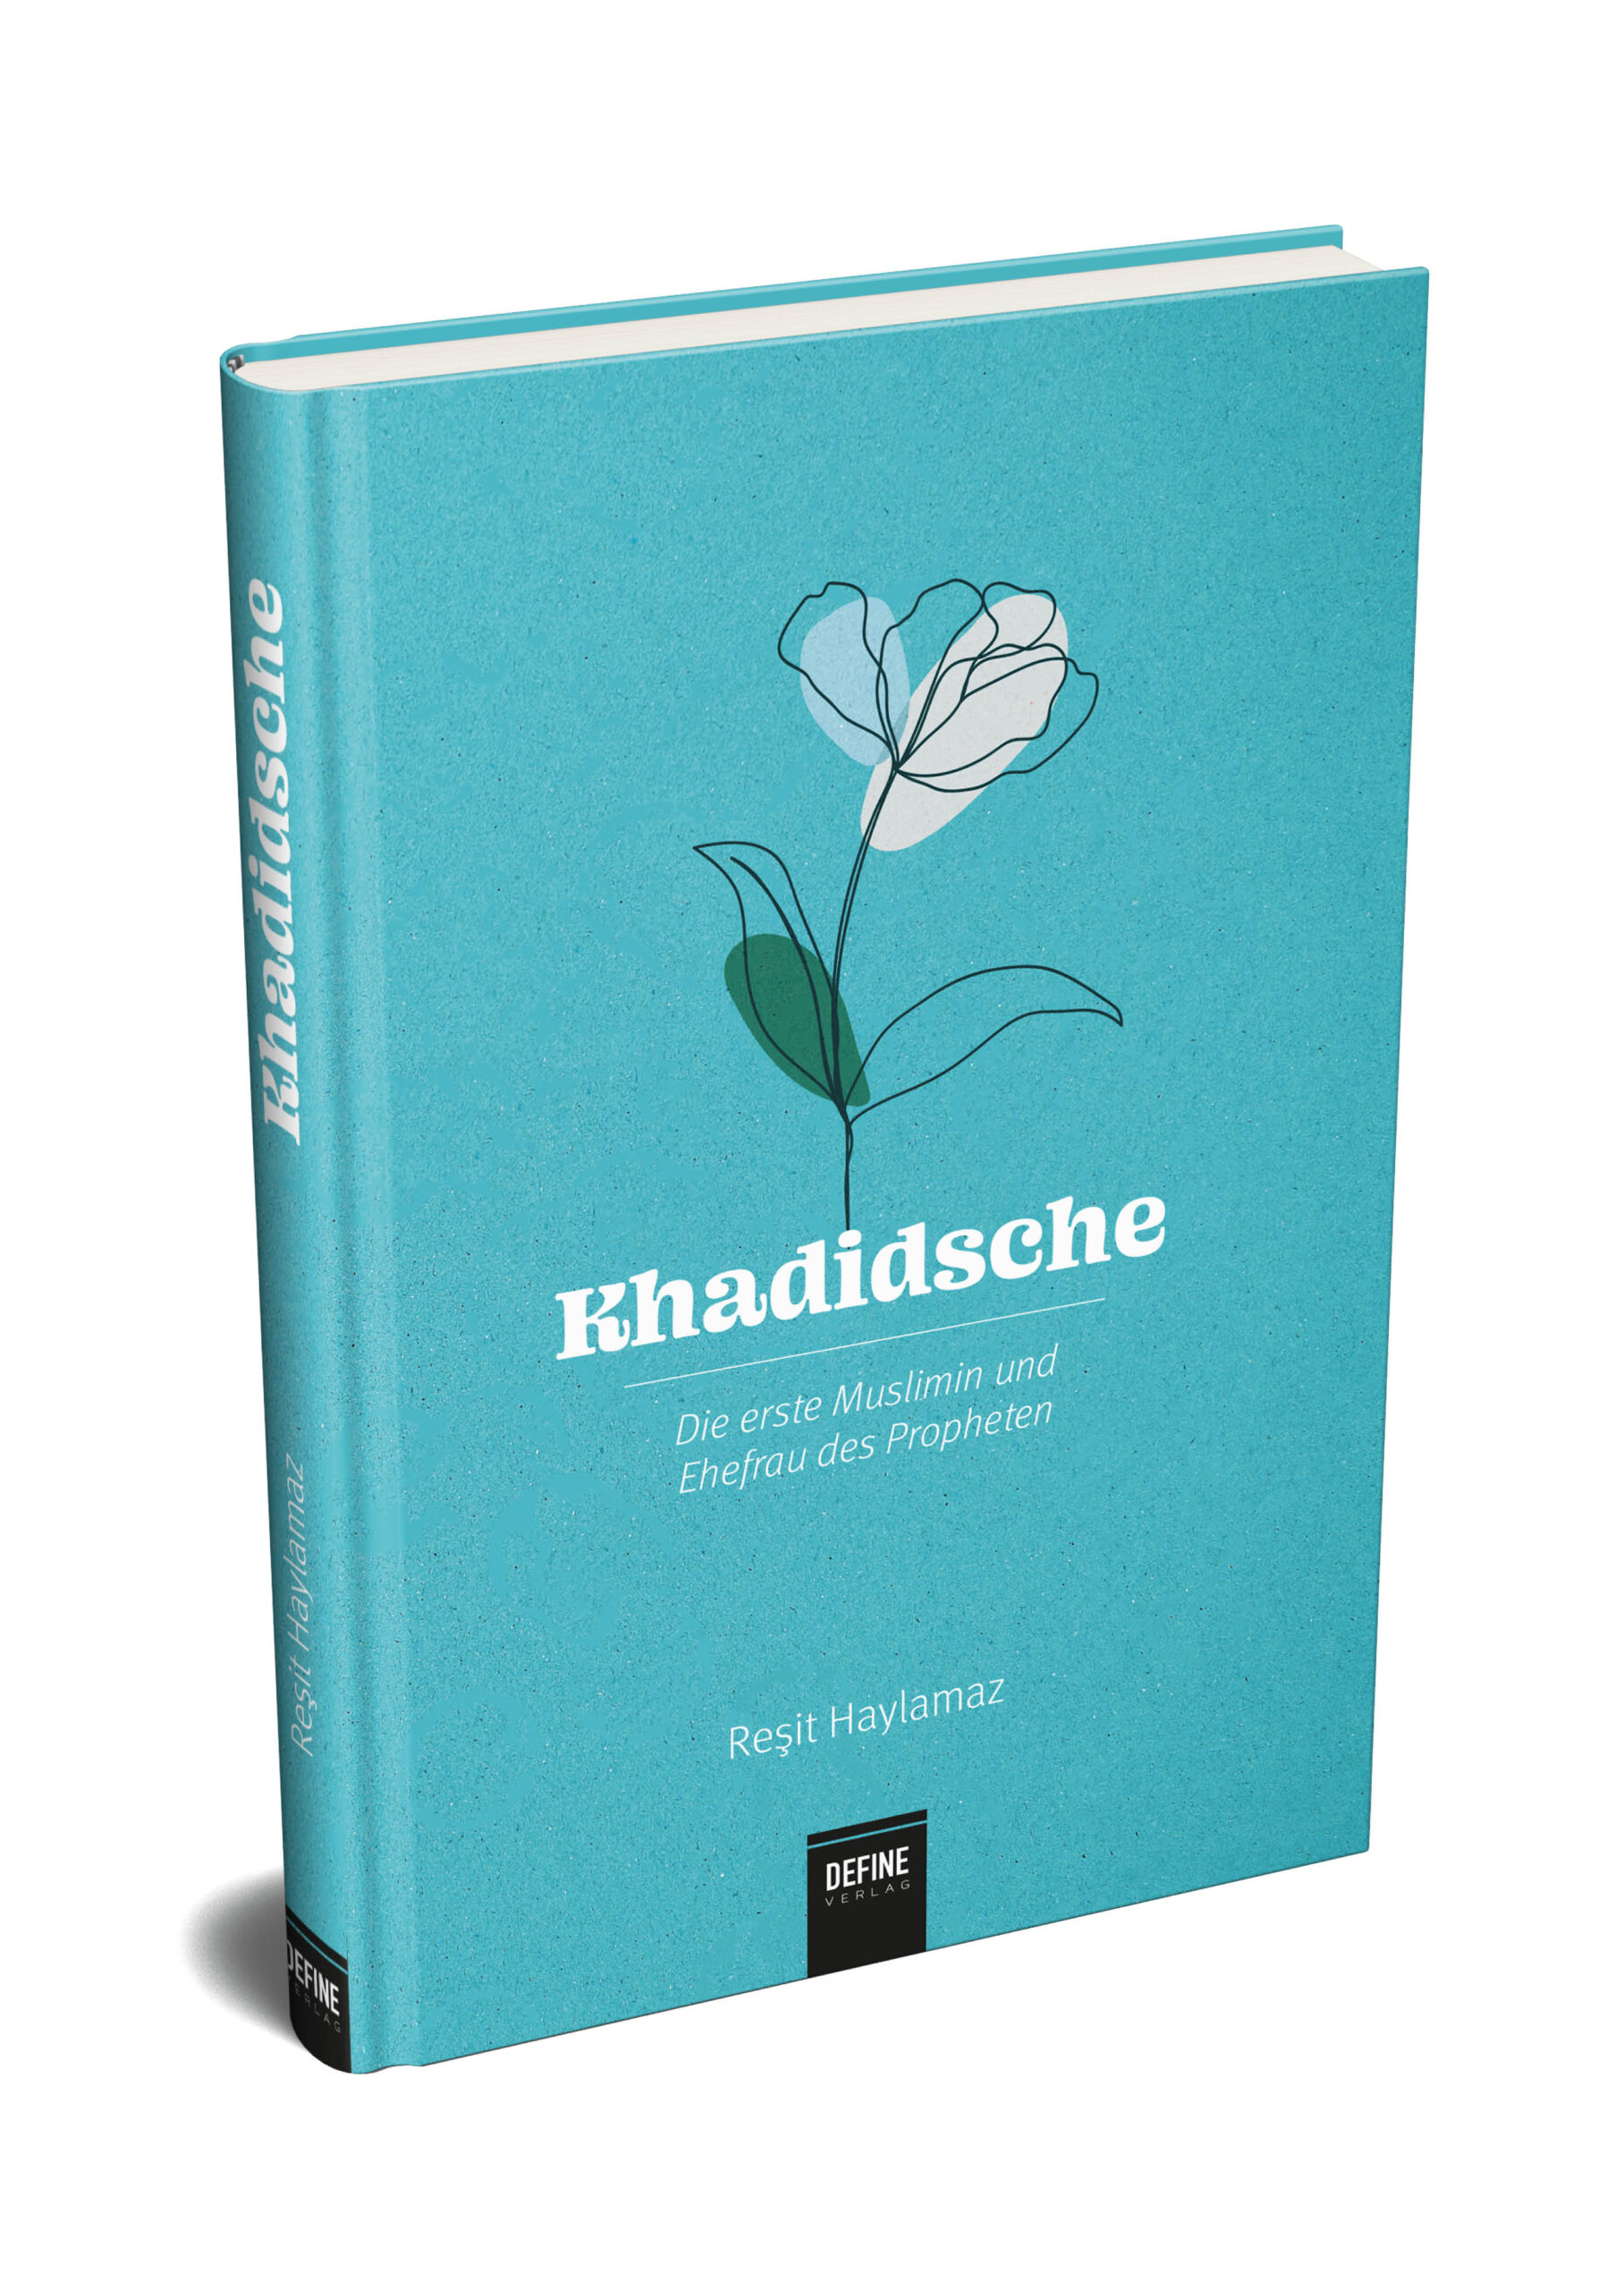 Khadidsche